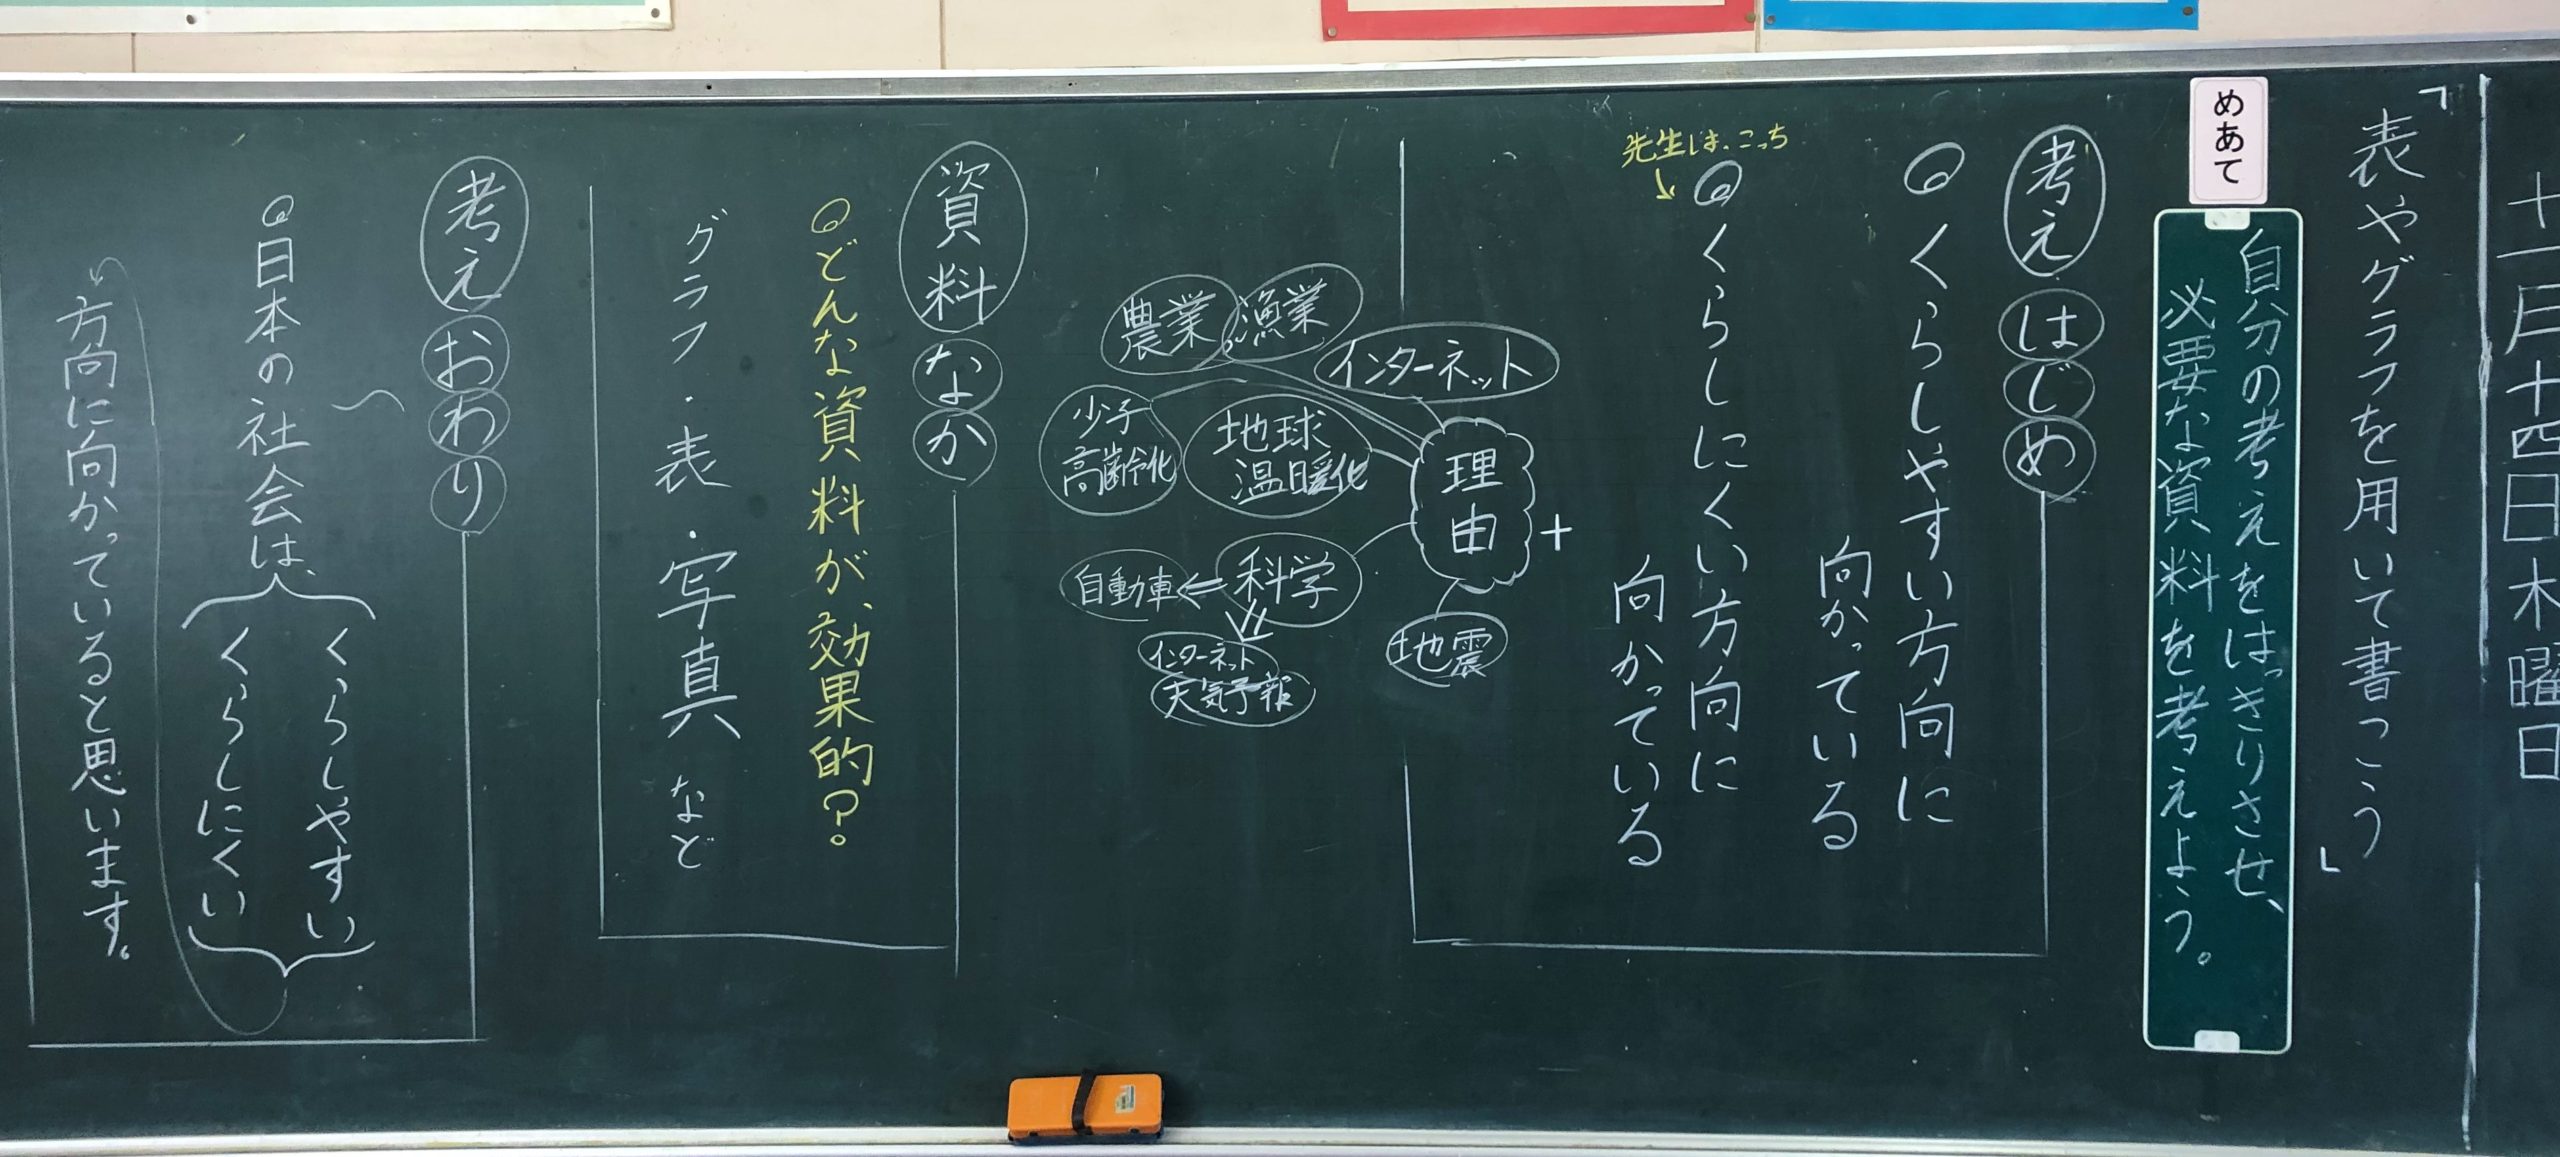 5年生国語 表やグラフを用いて書こう 黒板log